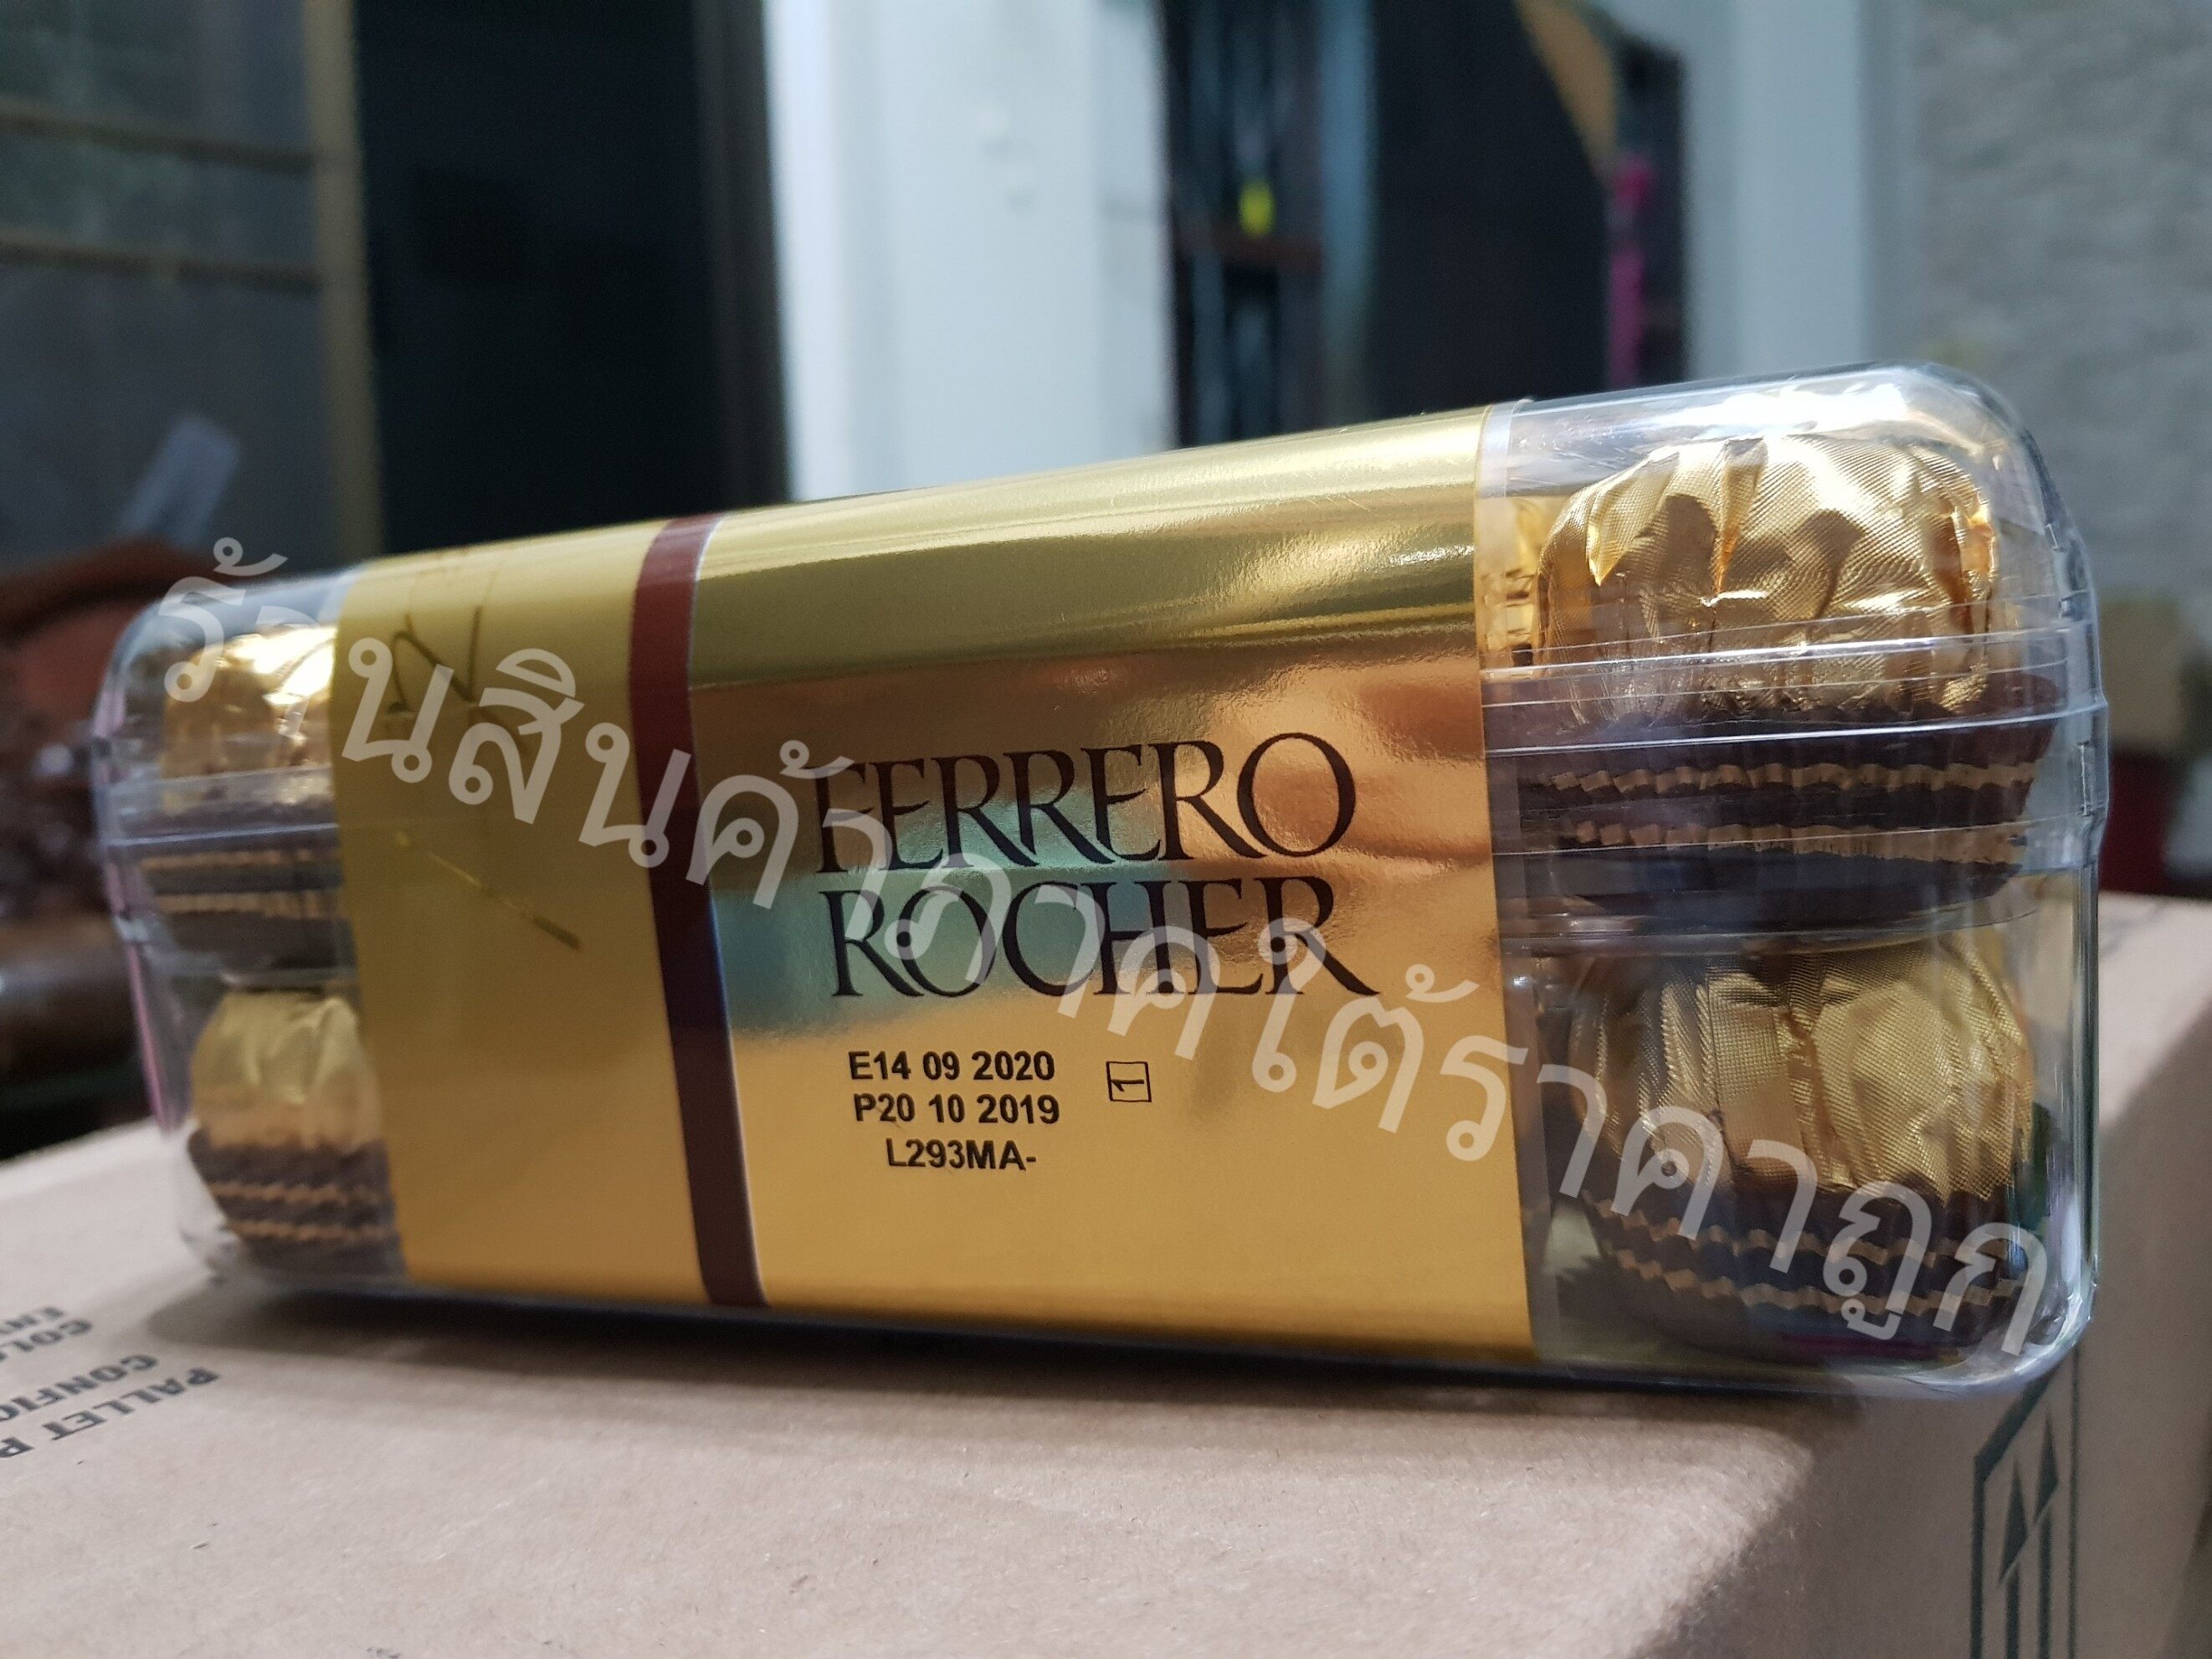 แท้ แท้ แท้ Ferrero Rocher เฟอร์เรโร่ รอชเชอร์ ช็อคโกแลต 30 ลูก